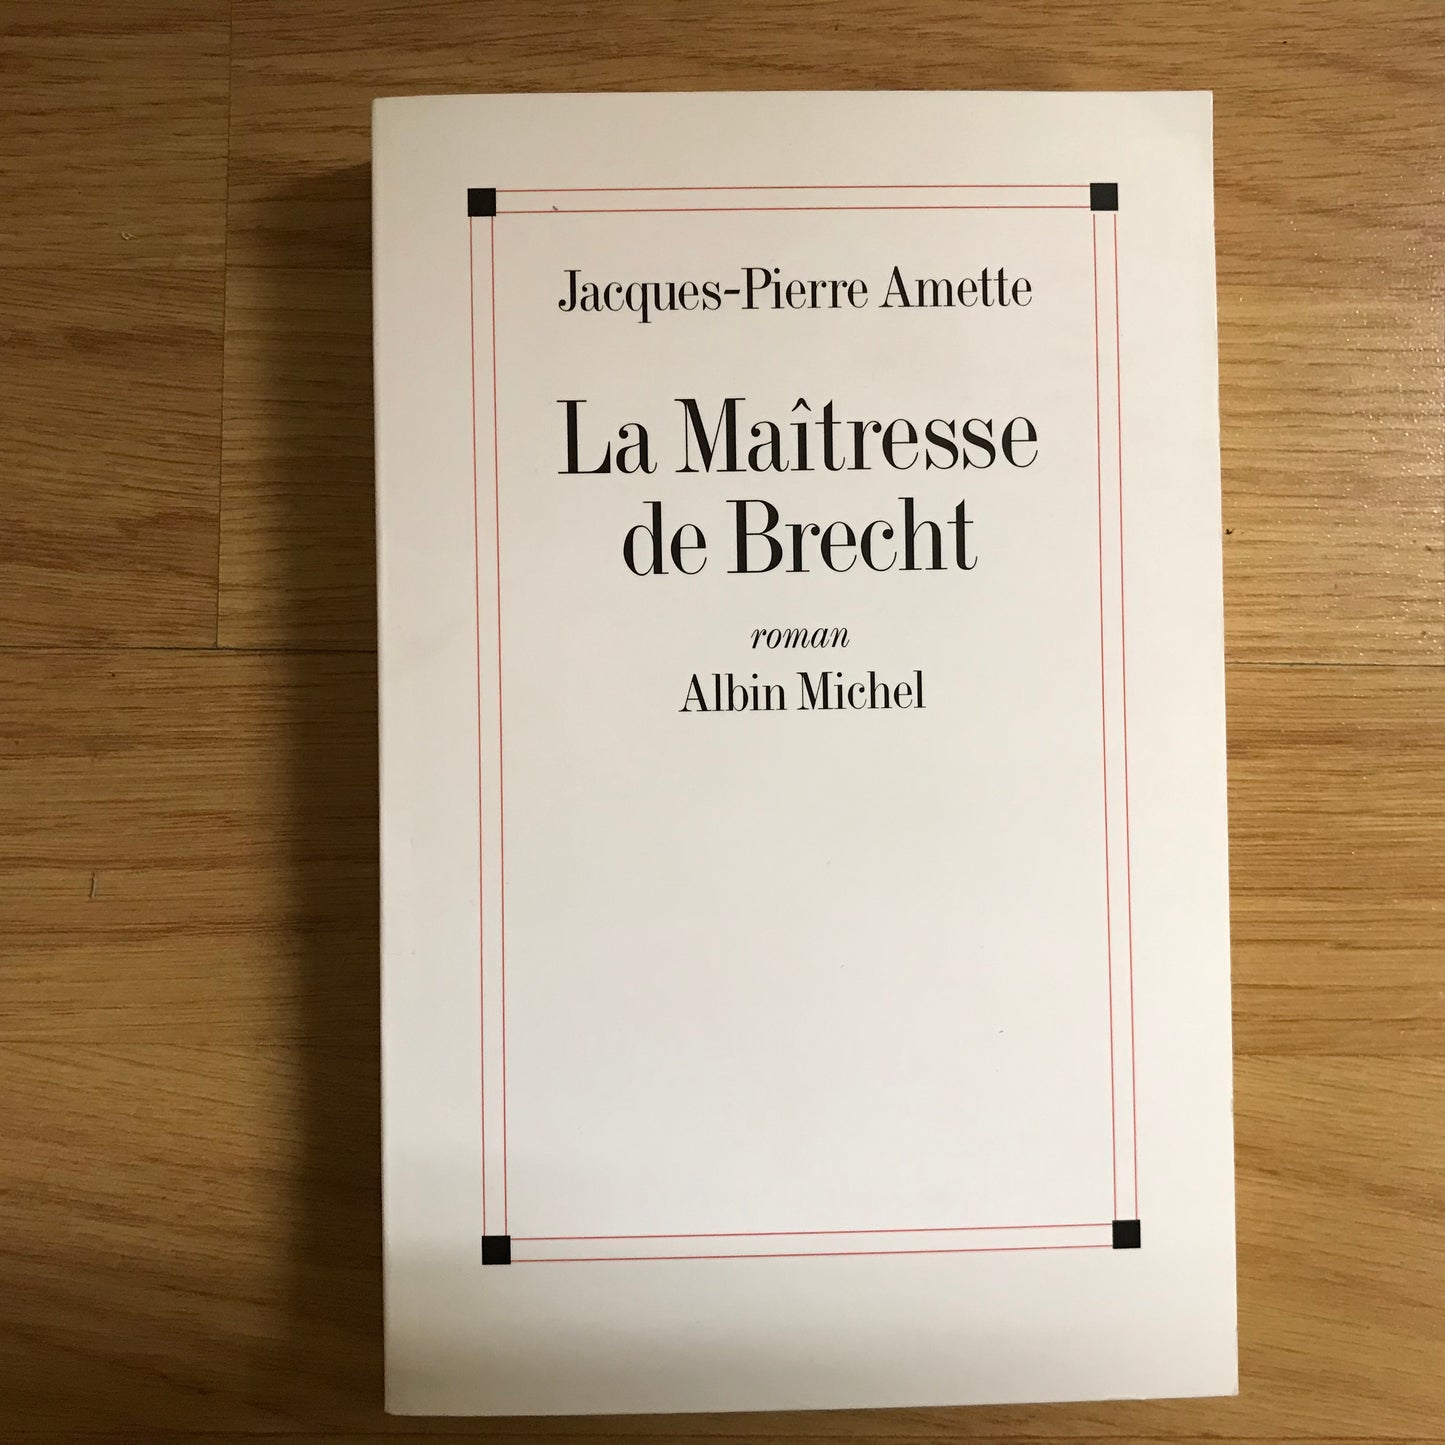 Amette, Jacques-Pierre - La maîtresse de Brecht